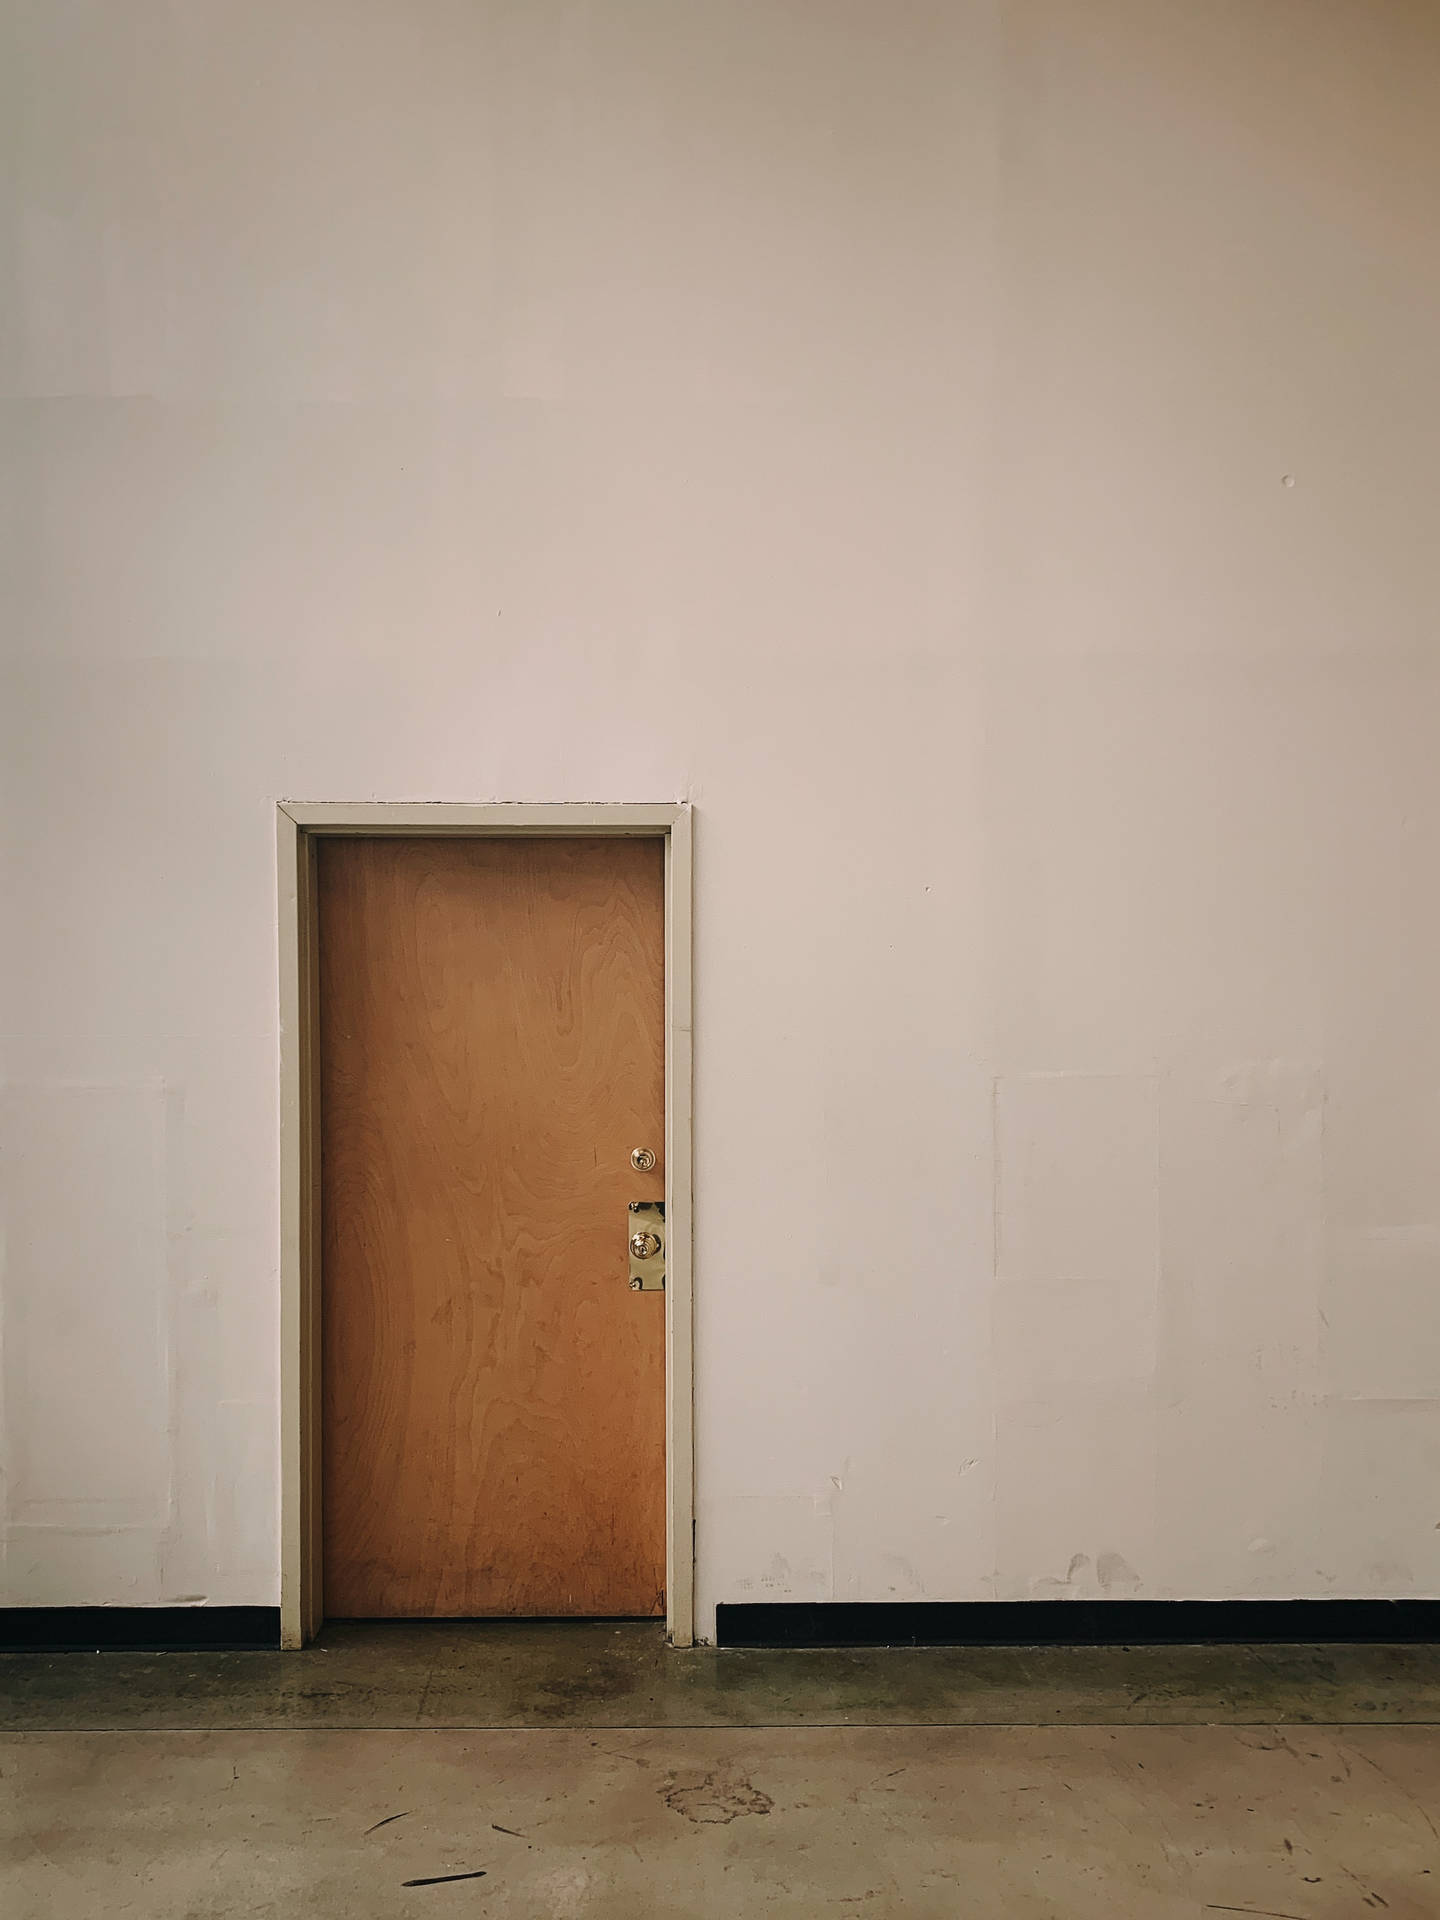 Einfachebraune Holztür In Einem Bauwerk Wallpaper